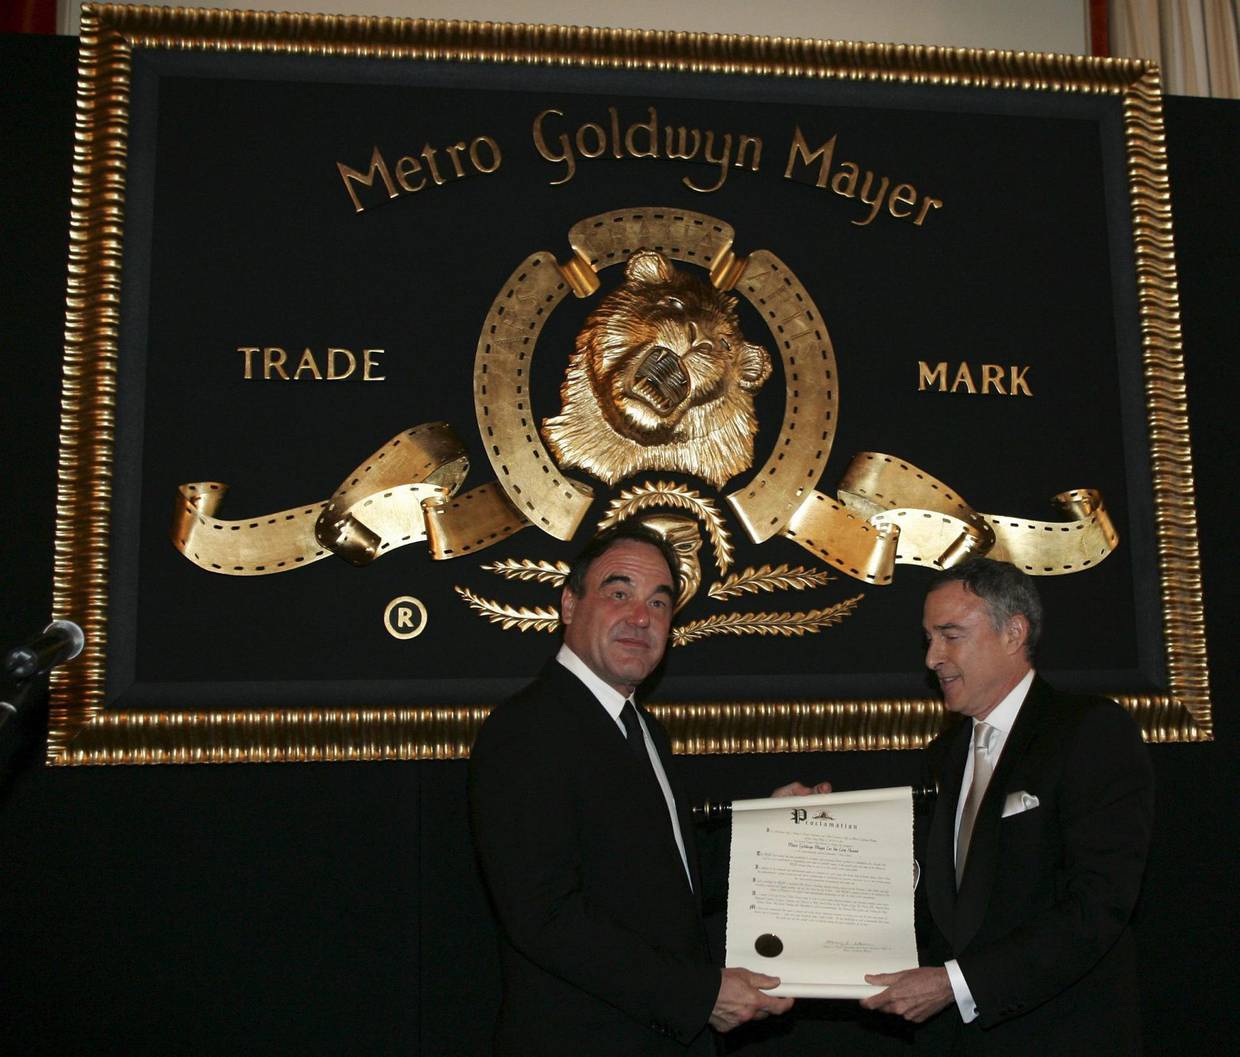 El estudio Metro-Goldwyn-Mayer  cumple cien años